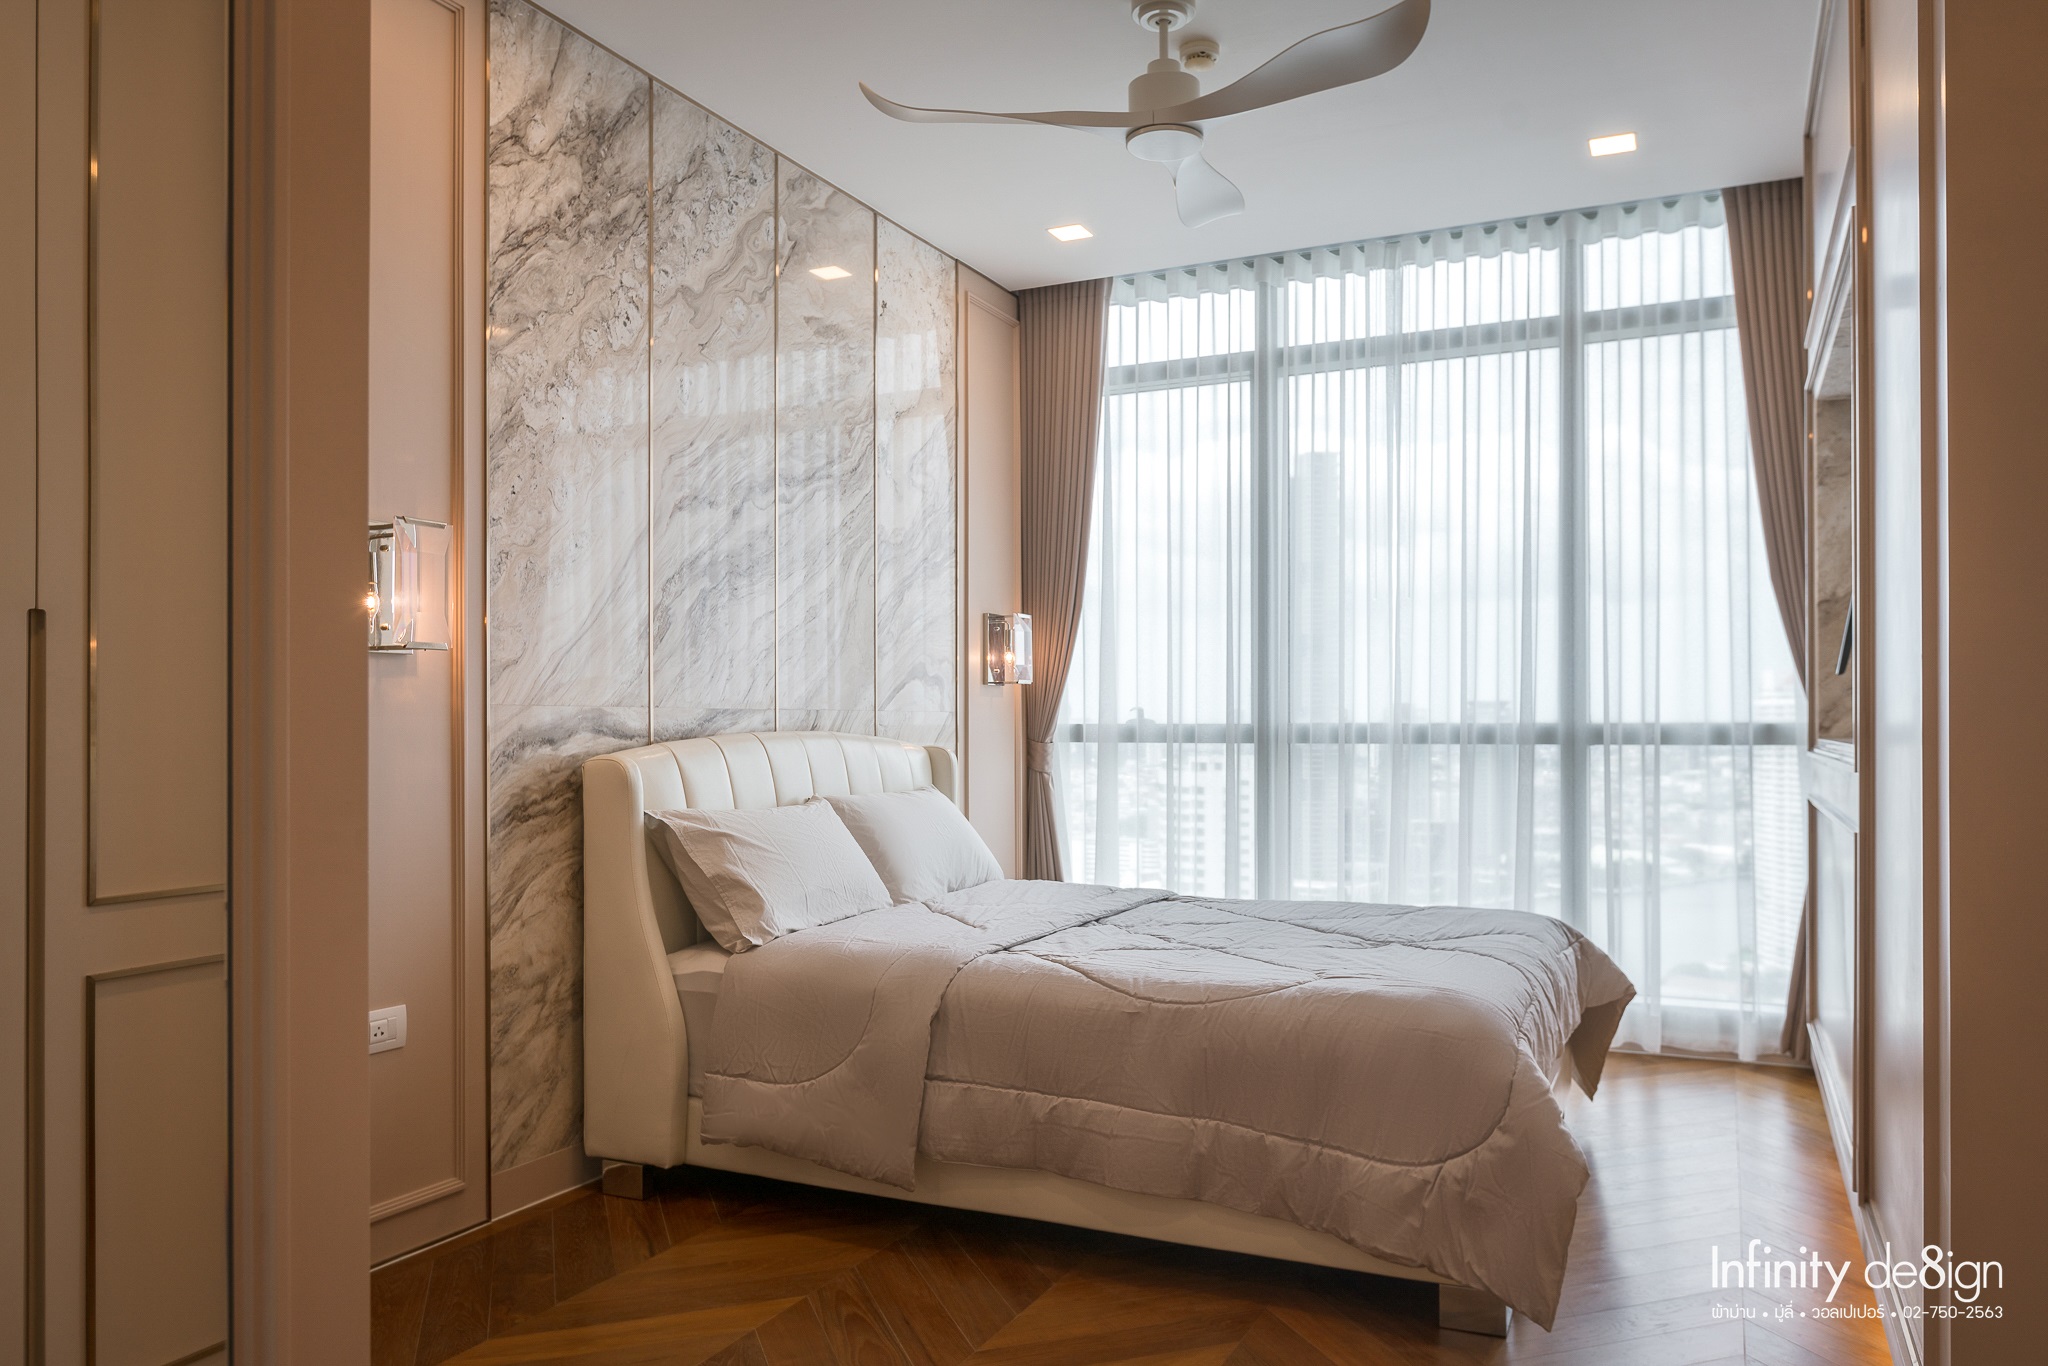  ไอเดียตกแต่งผ้าม่านโทนสีครีม : ห้องนอน Modern Luxury Style